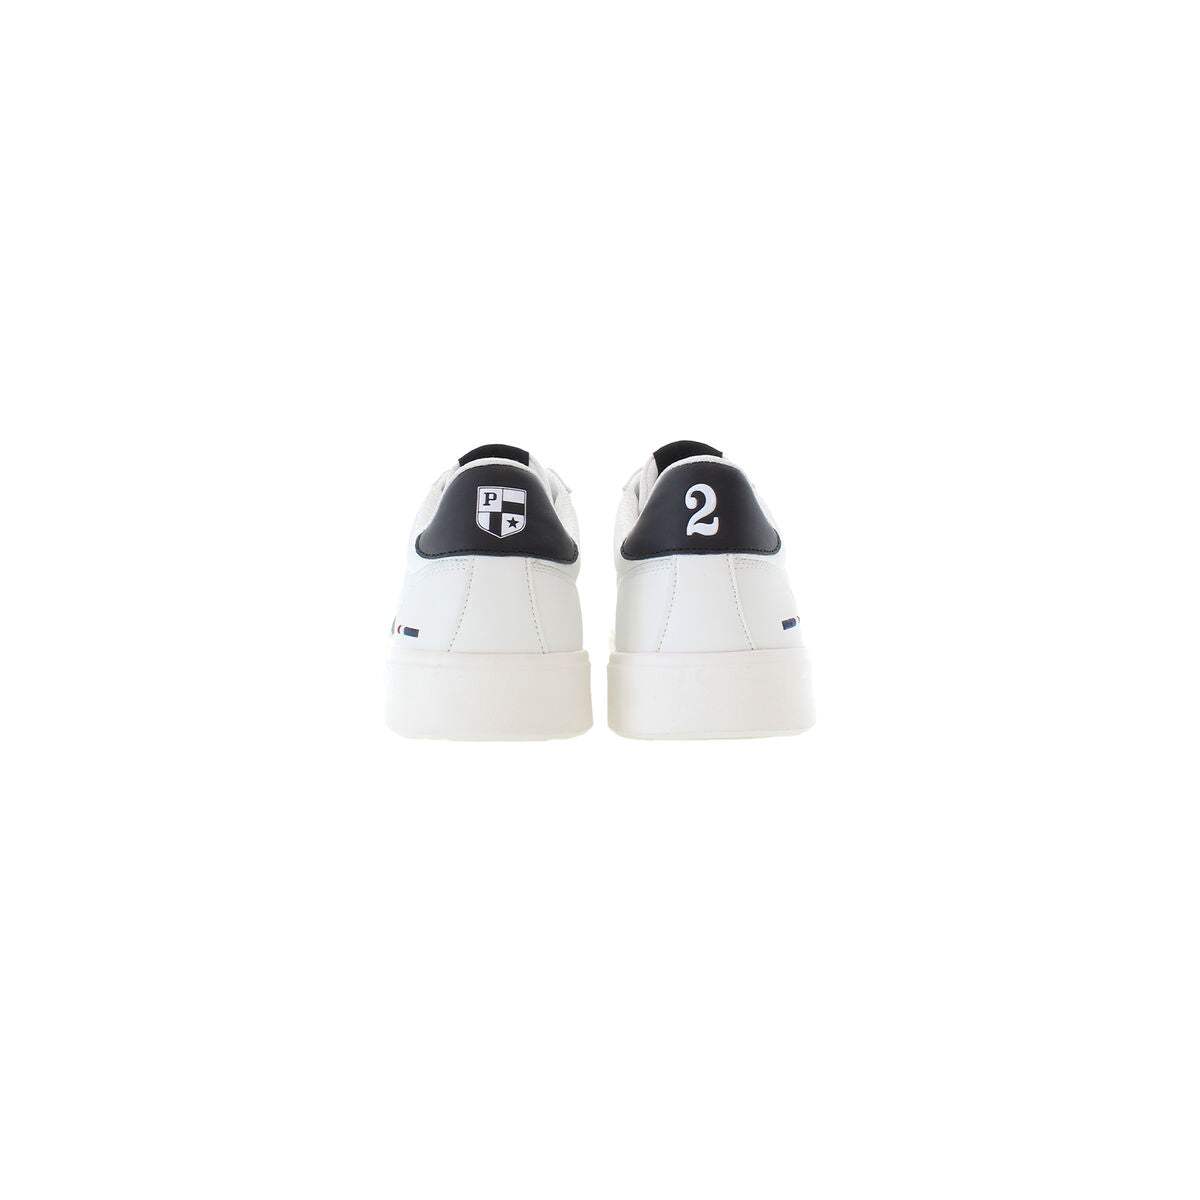 Chaussures de Sport pour Homme U.S. Polo Assn. TYMES009 WHI BLK01 Blanc - U.S. Polo Assn. - Jardin D'Eyden - jardindeyden.fr